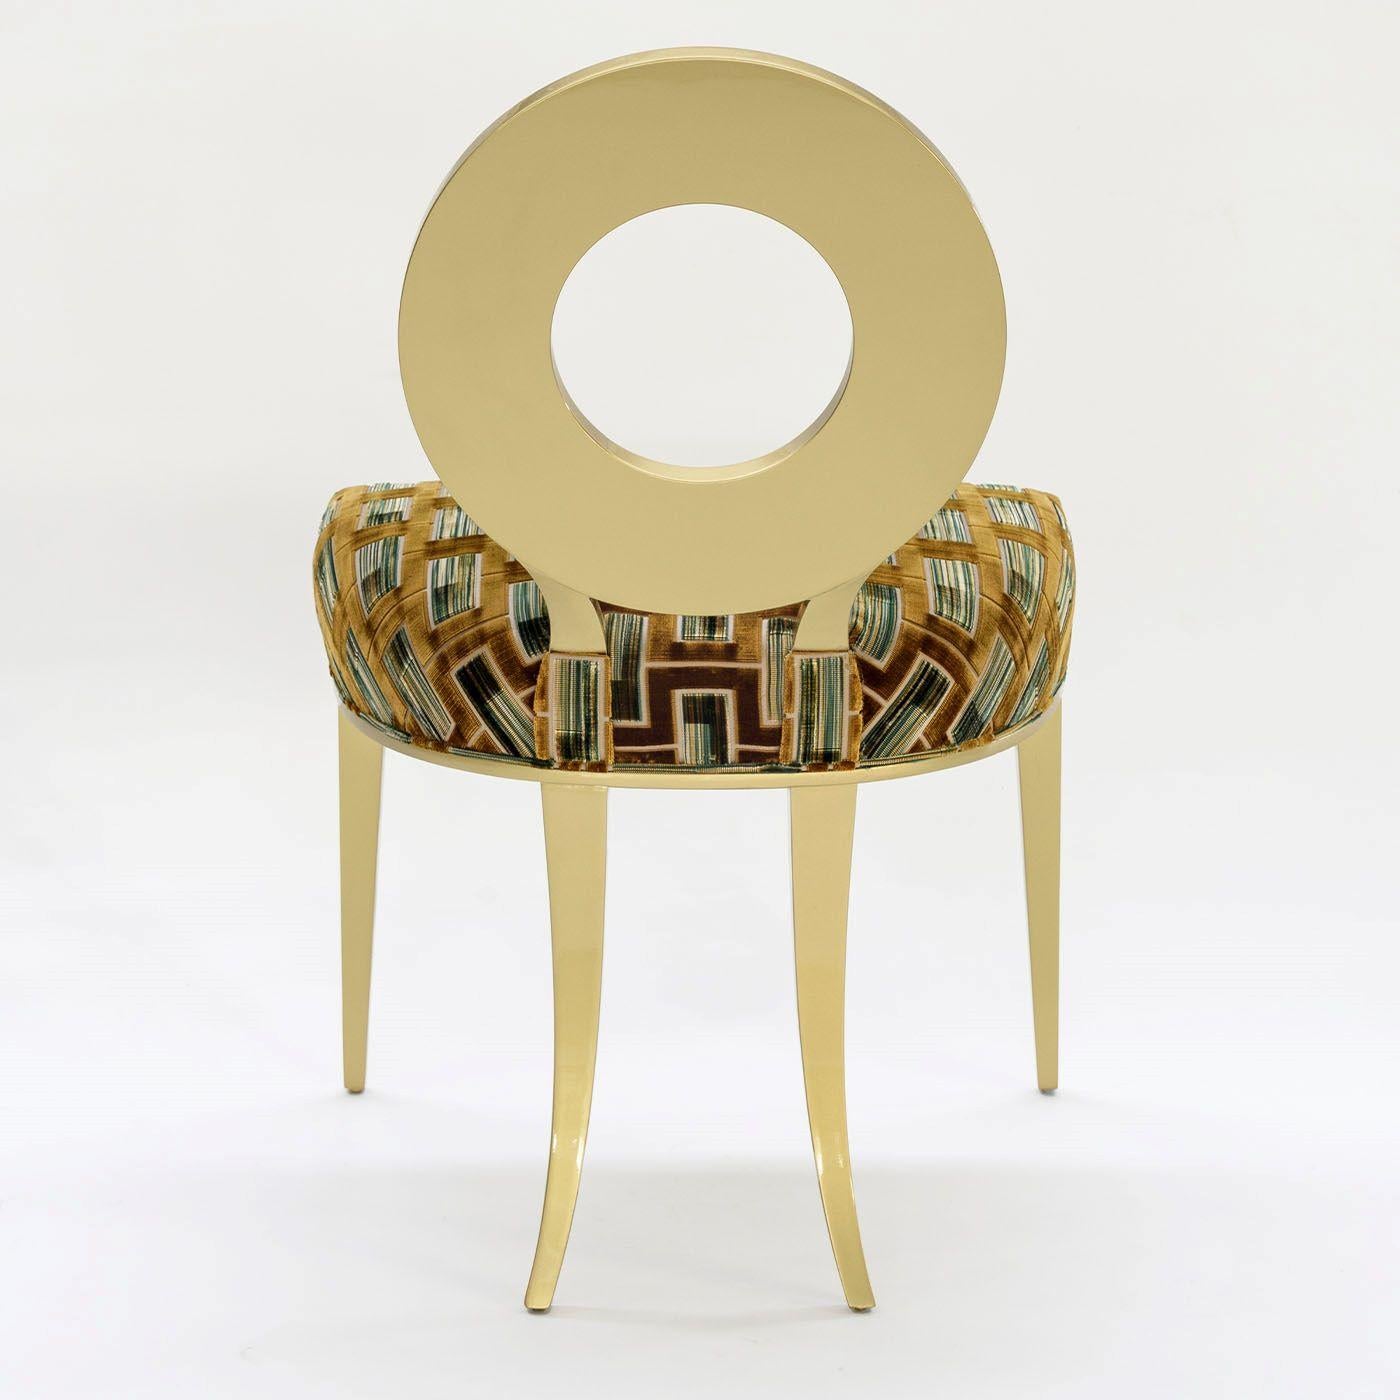 Eine ringförmige Rückenlehne, die an einen Vollmond erinnert, kennzeichnet diesen stilvollen und anmutigen Stuhl. Die in einem schimmernden Goldton lackierte und mit einem antiken Glanzfinish versehene Holzstruktur verbindet konisch zulaufende und